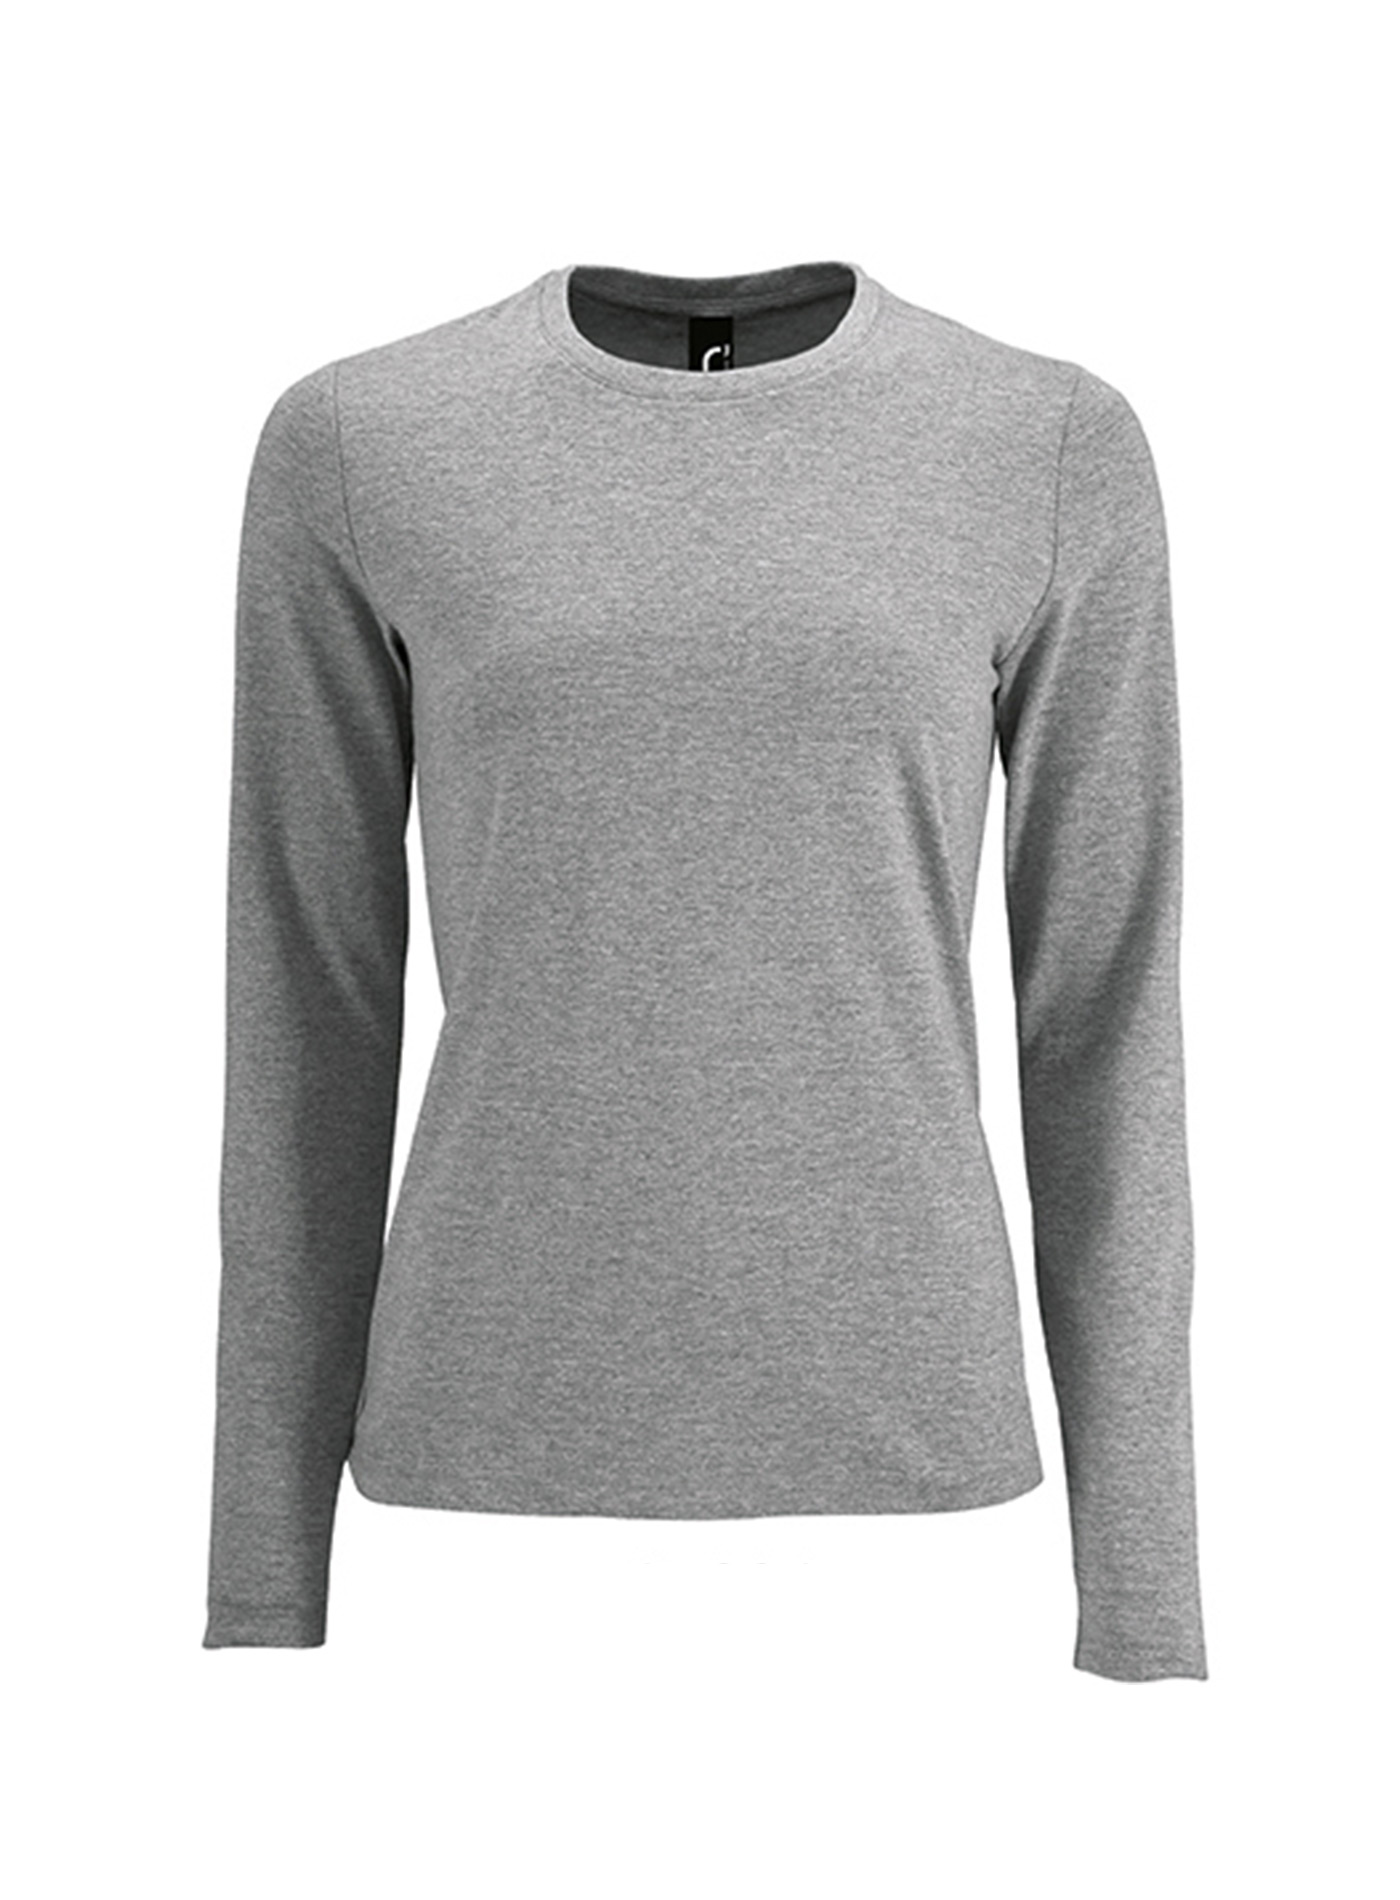 Dámské tričko s dlouhým rukávem SOL´S Imperial - Světle šedý melír XL